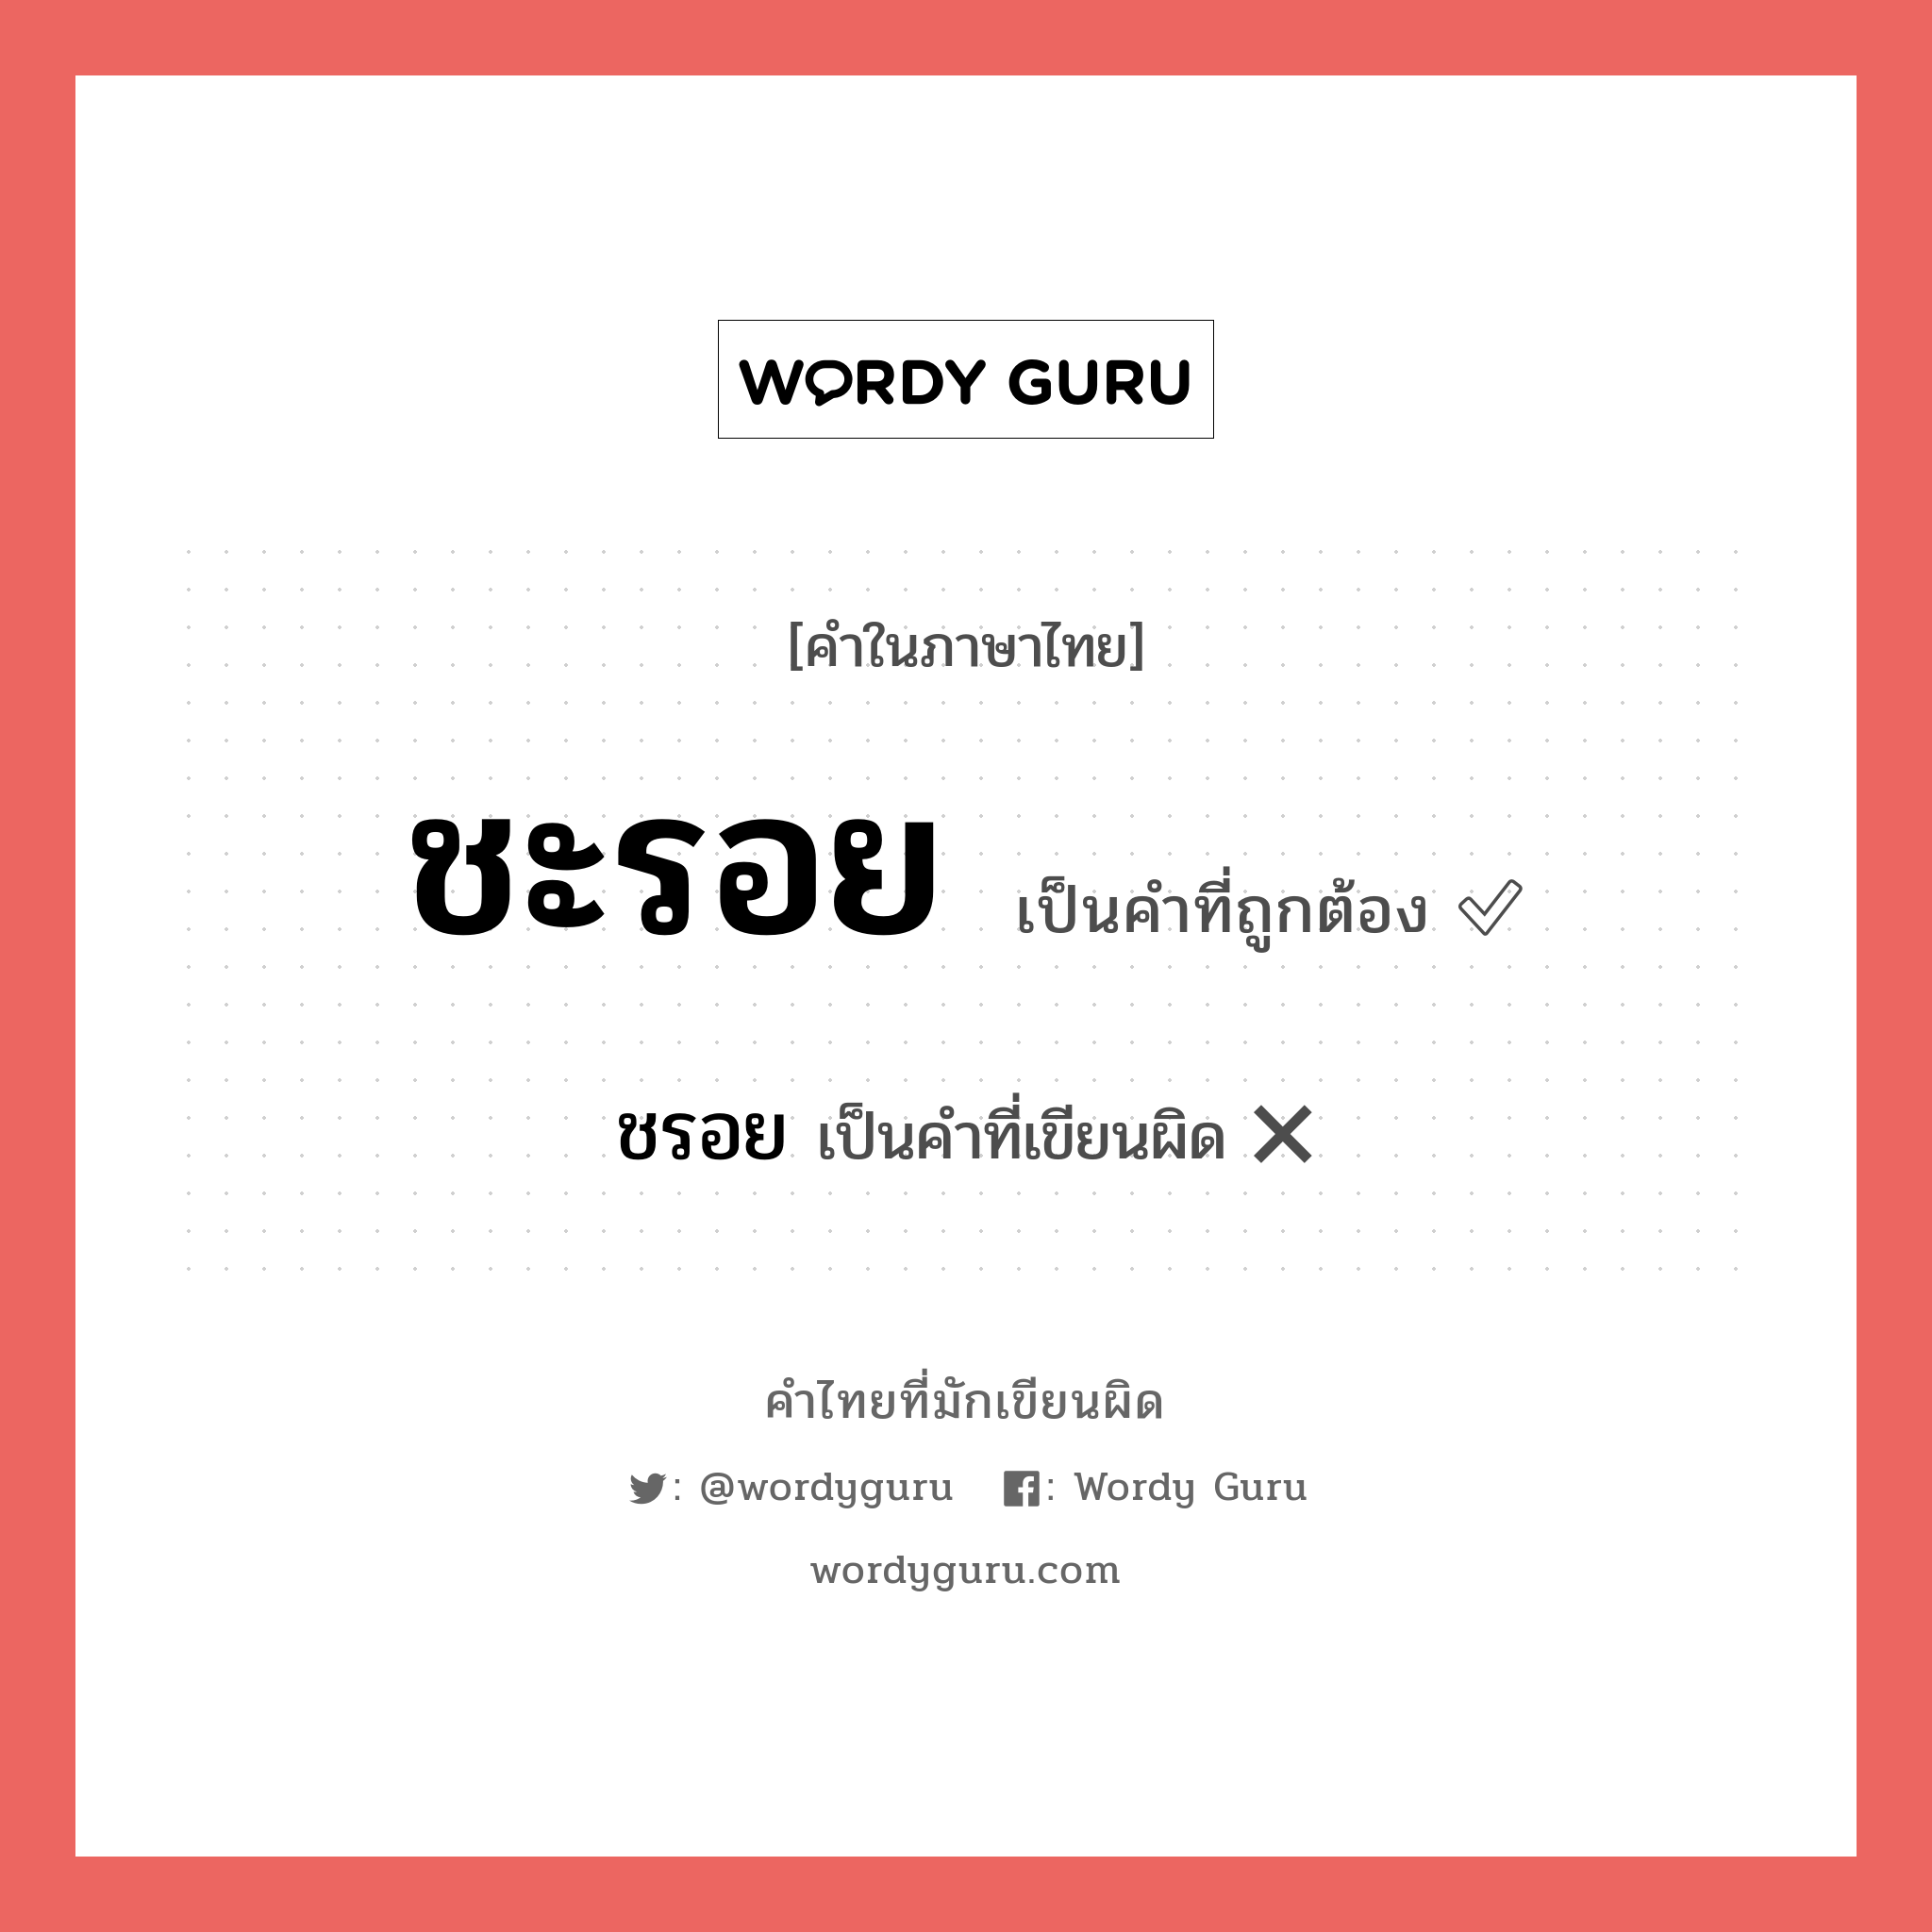 ชะรอย หรือ ชรอย คำไหนเขียนถูก?, คำในภาษาไทยที่มักเขียนผิด ชะรอย คำที่ผิด ❌ ชรอย